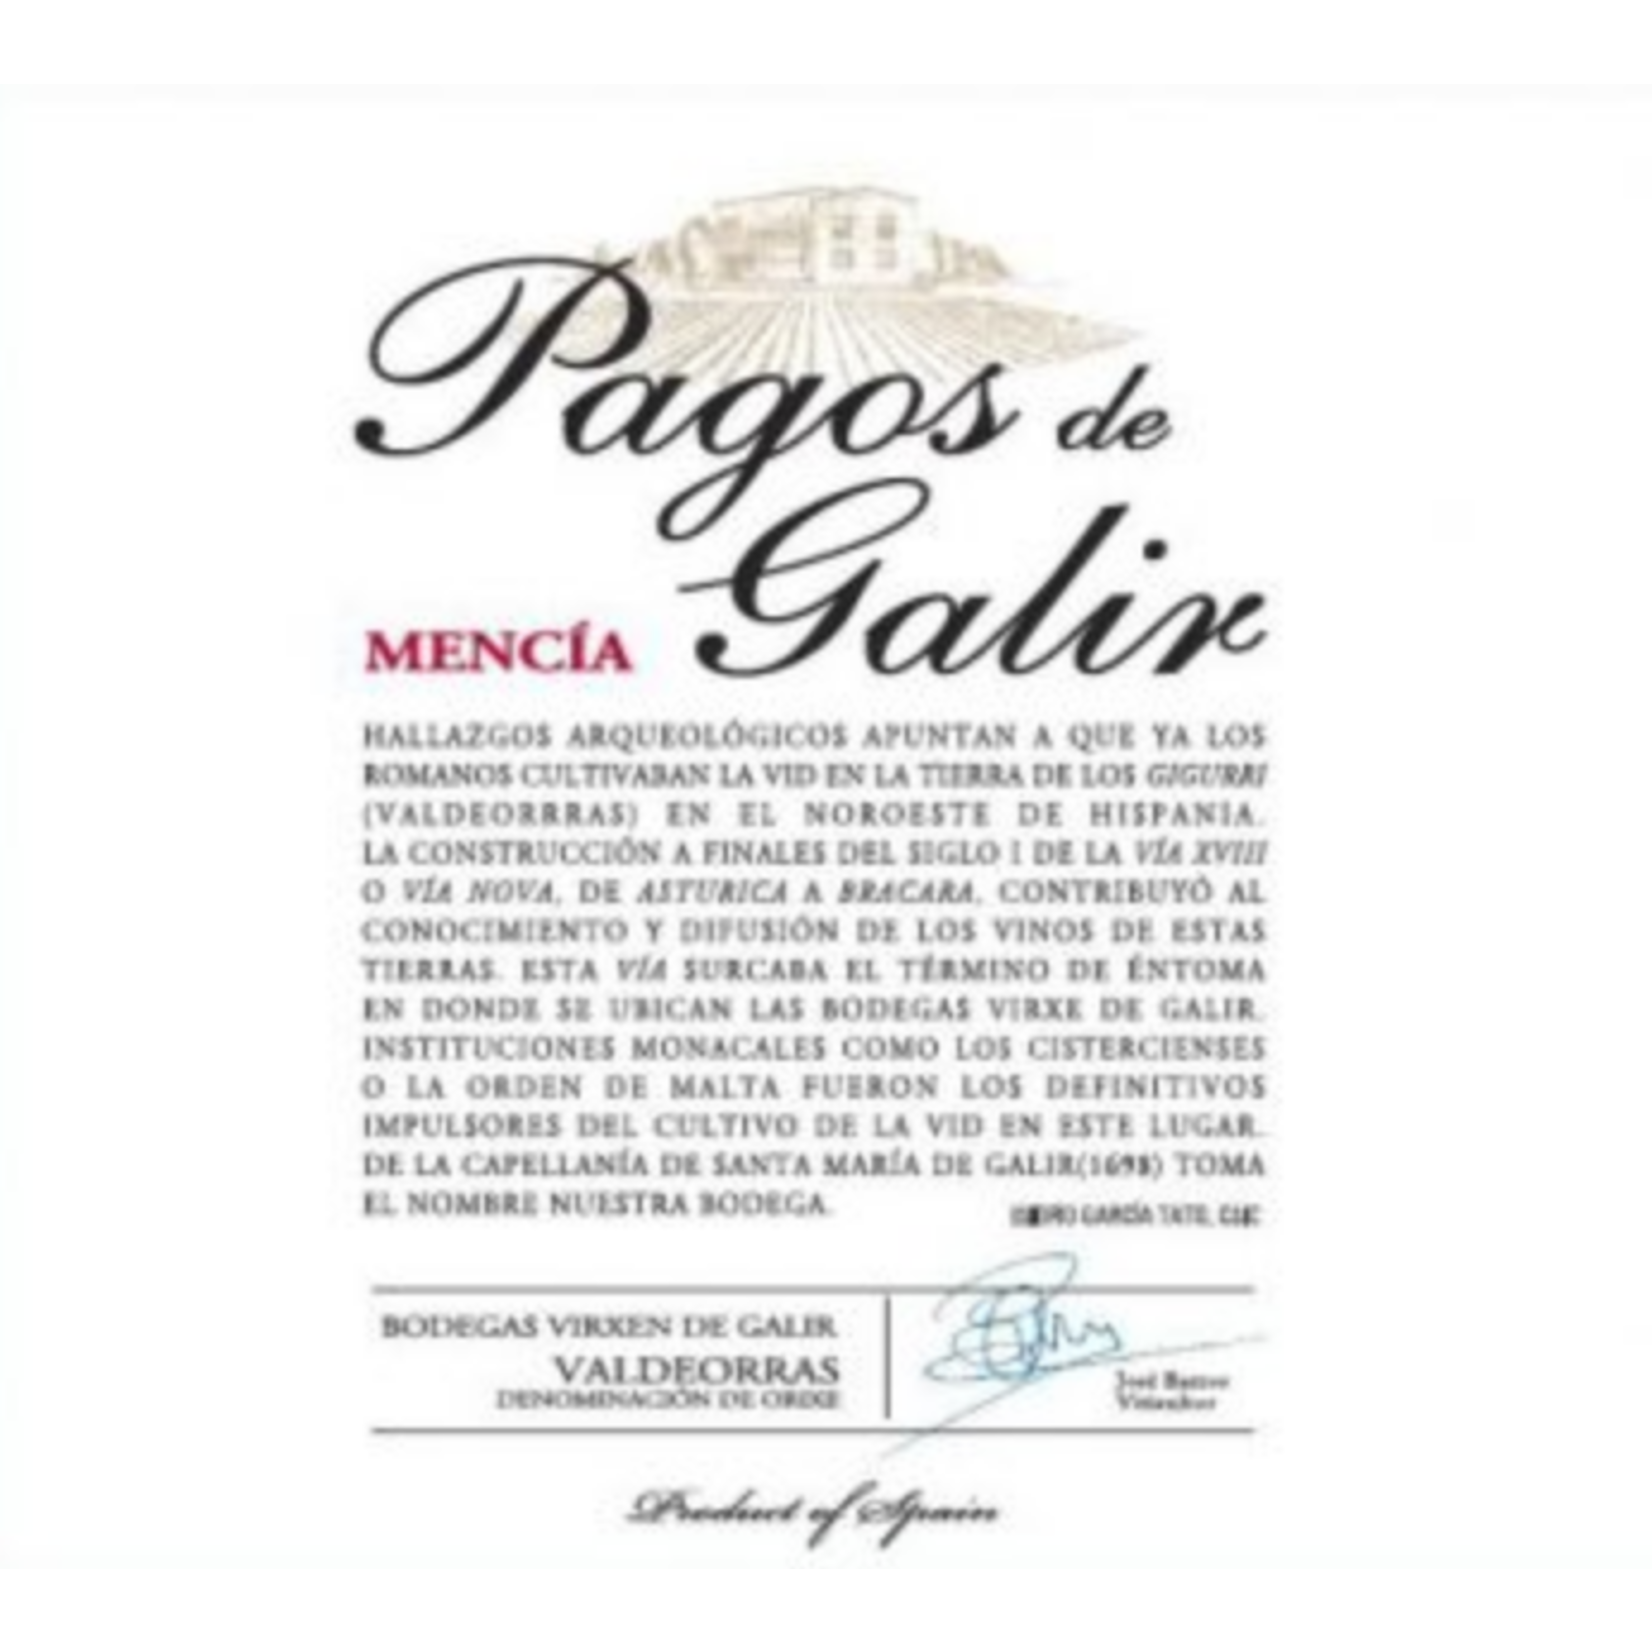 Wine Valdeorras Tinto 'Pagos del Galir' Mencia Virgen del Galir 2017